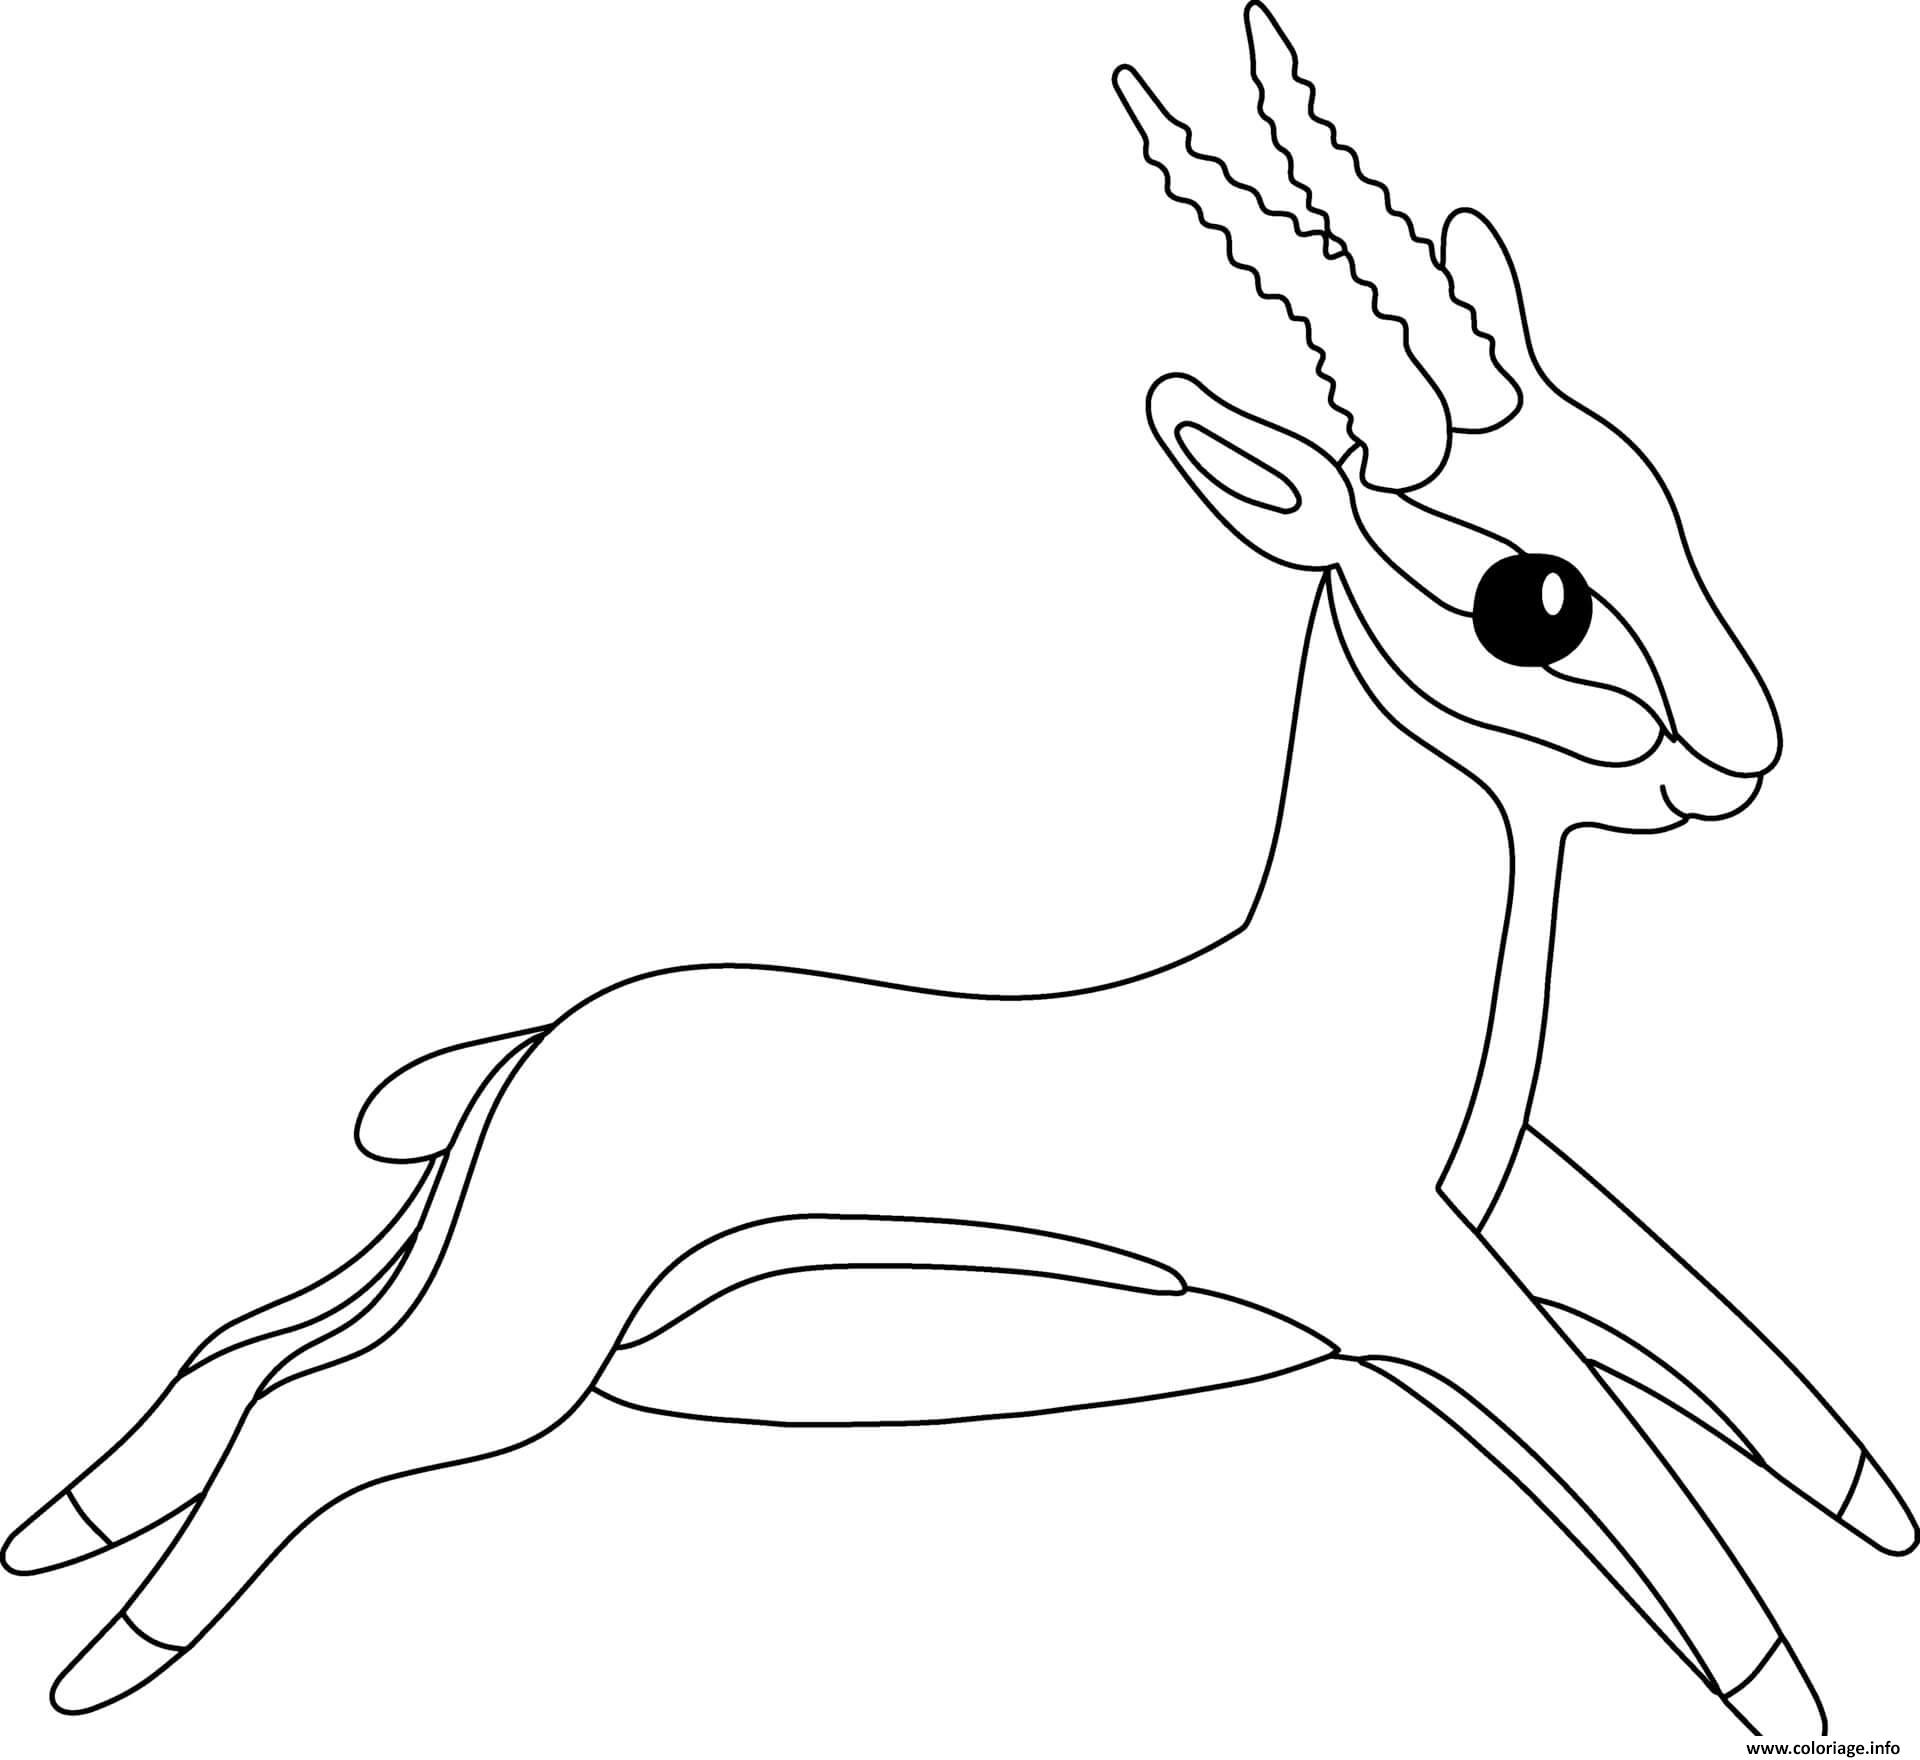 Dessin antilope avec des pattes menues et cornes longues arquees vivant en afrique asie et amerique du nord Coloriage Gratuit à Imprimer